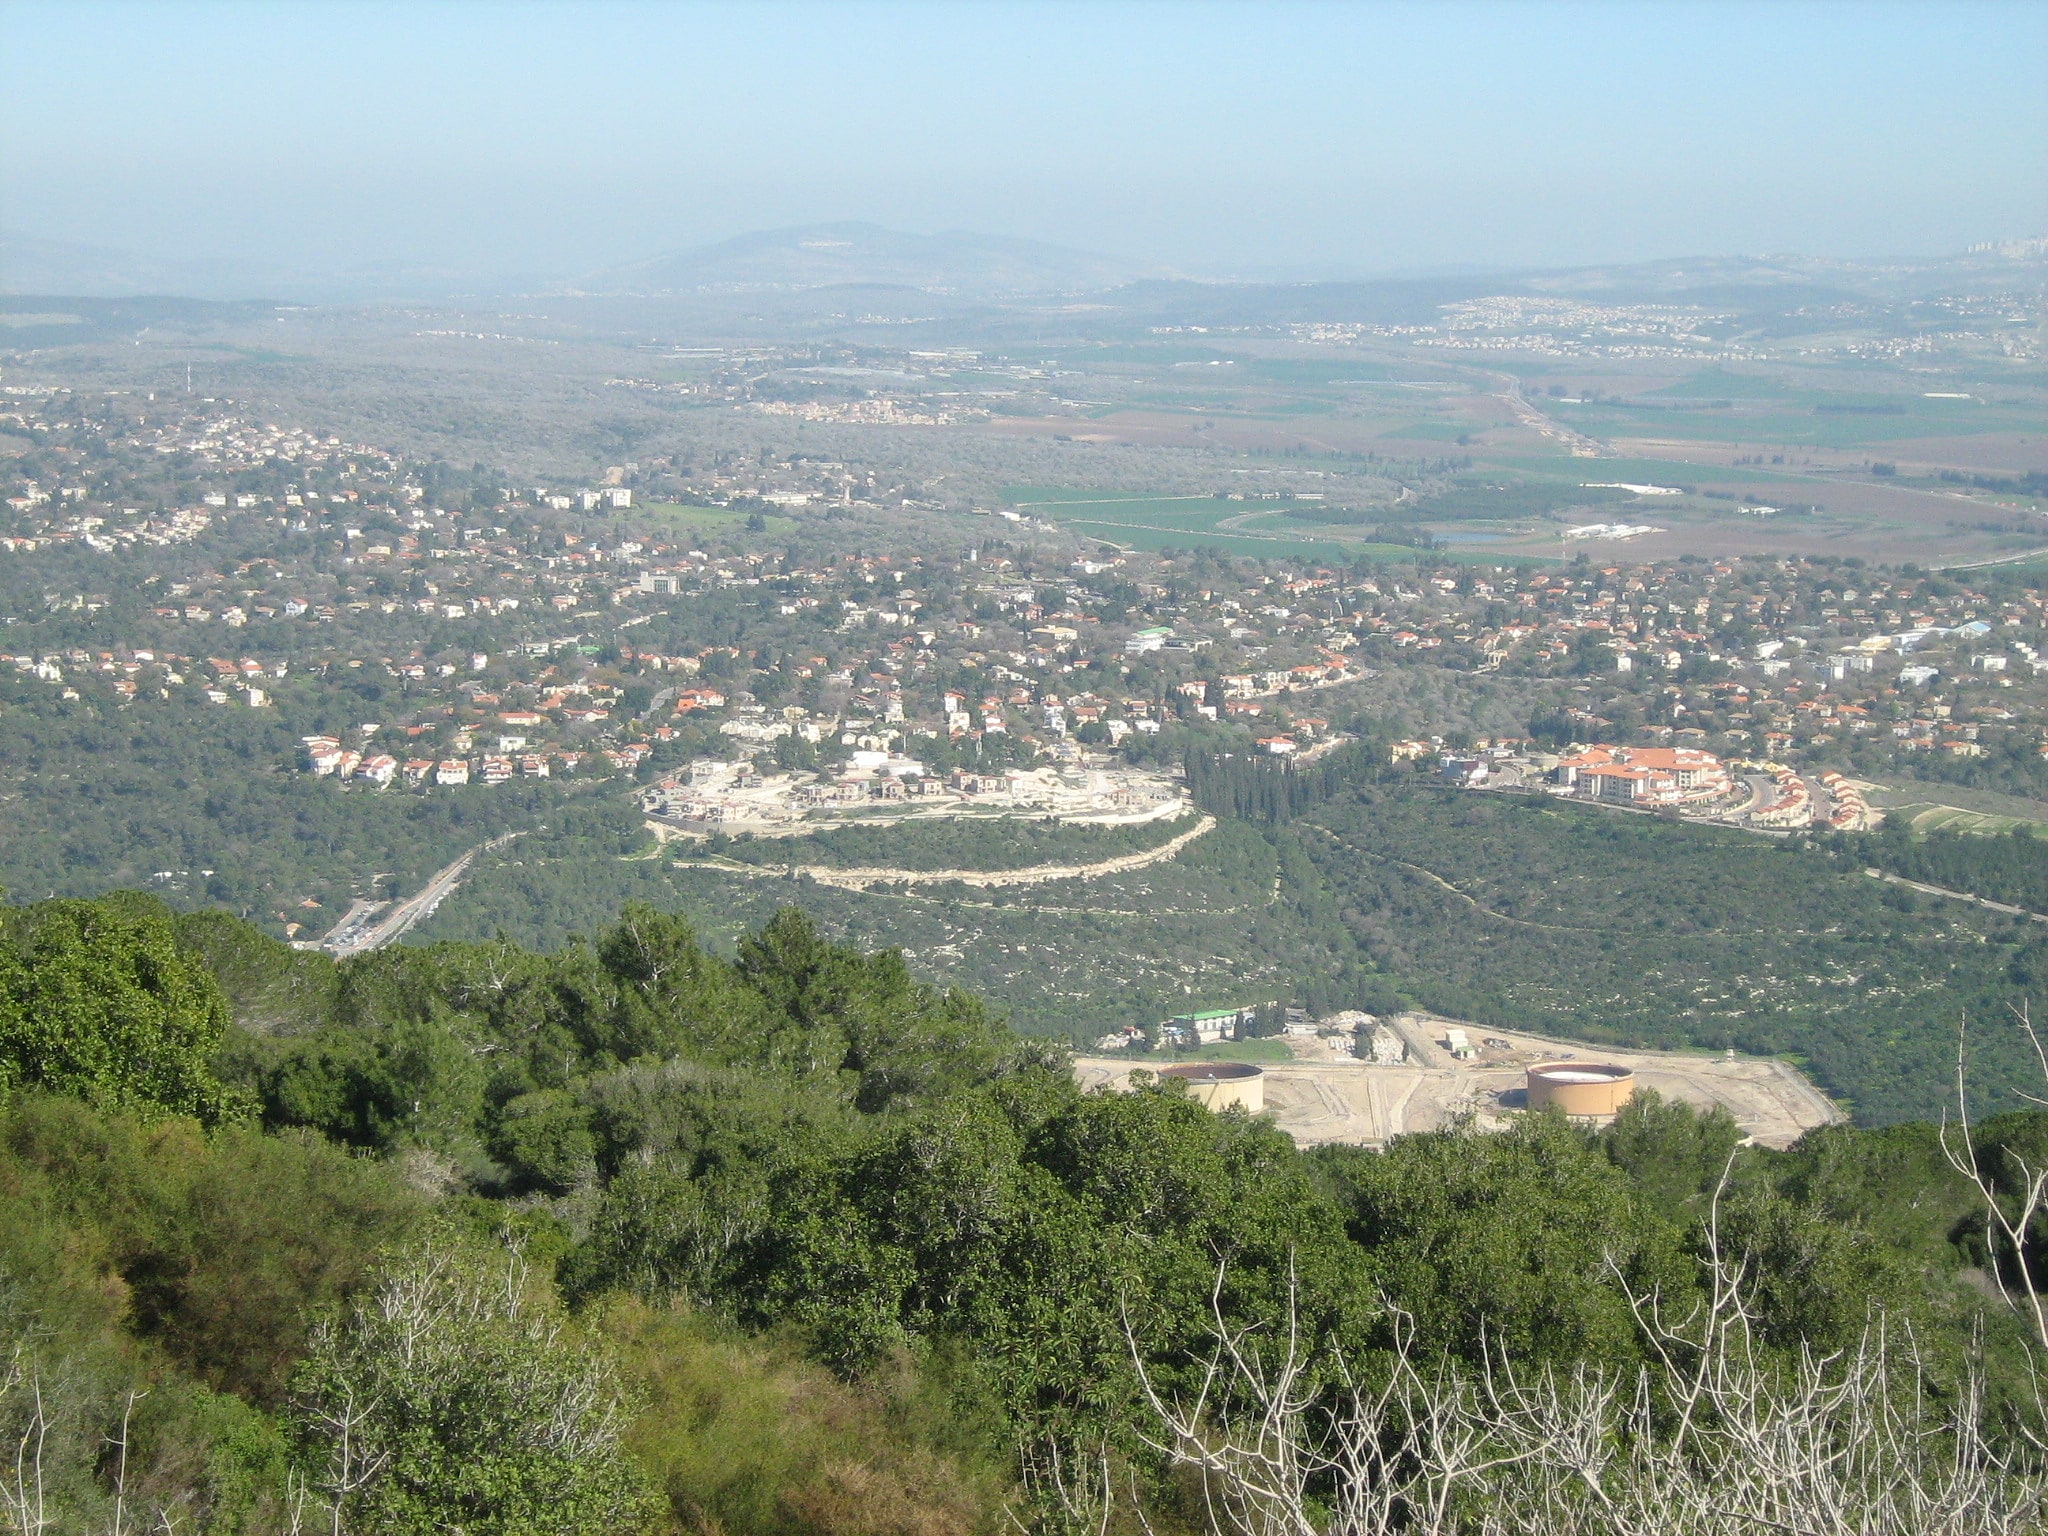 Kiryat Tiv'on, Israel